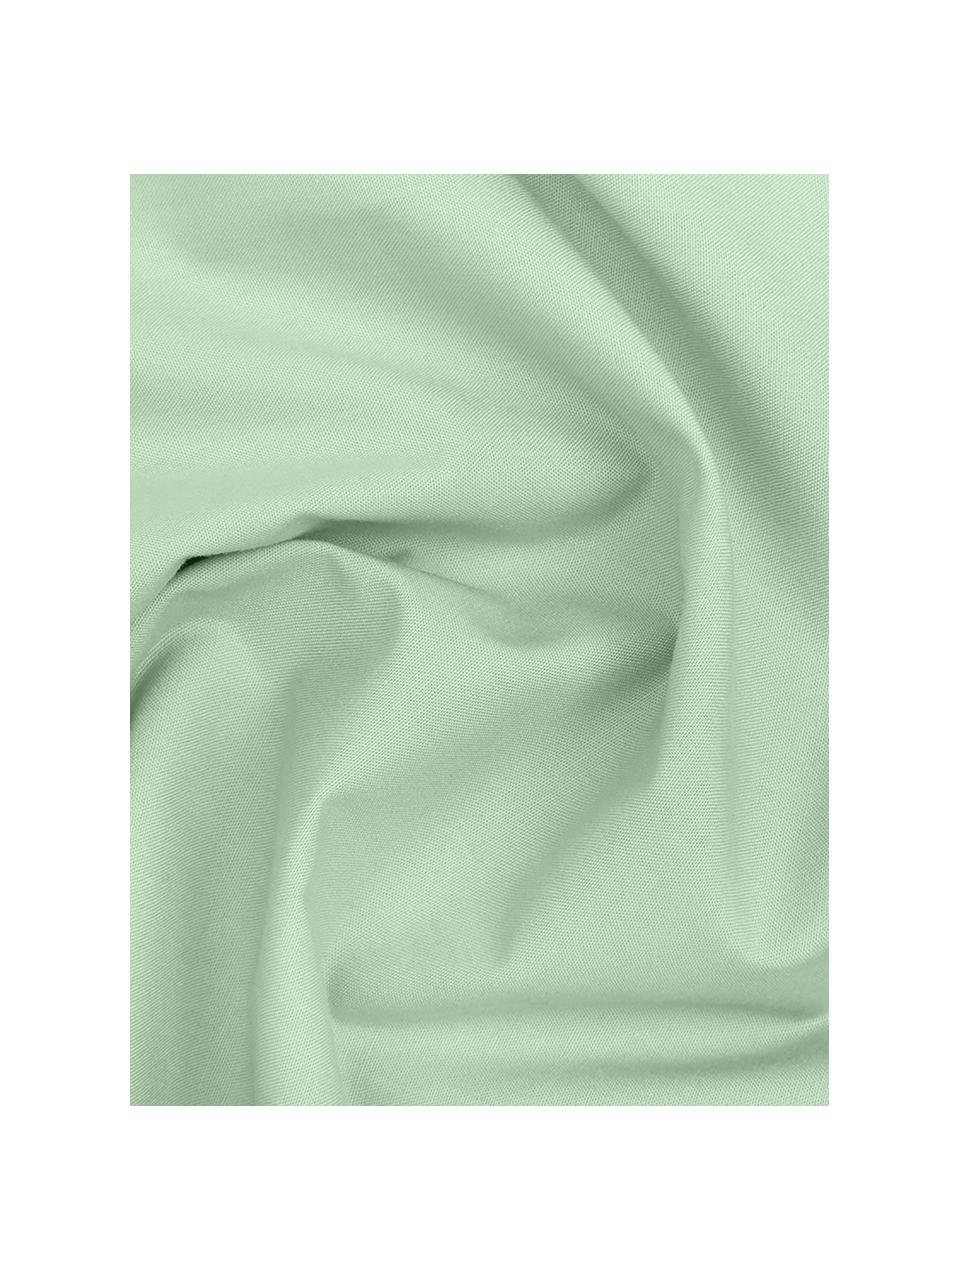 Pościel z perkalu Elsie, Szałwiowy zielony, 135 x 200 cm + 1 poduszka 80 x 80 cm